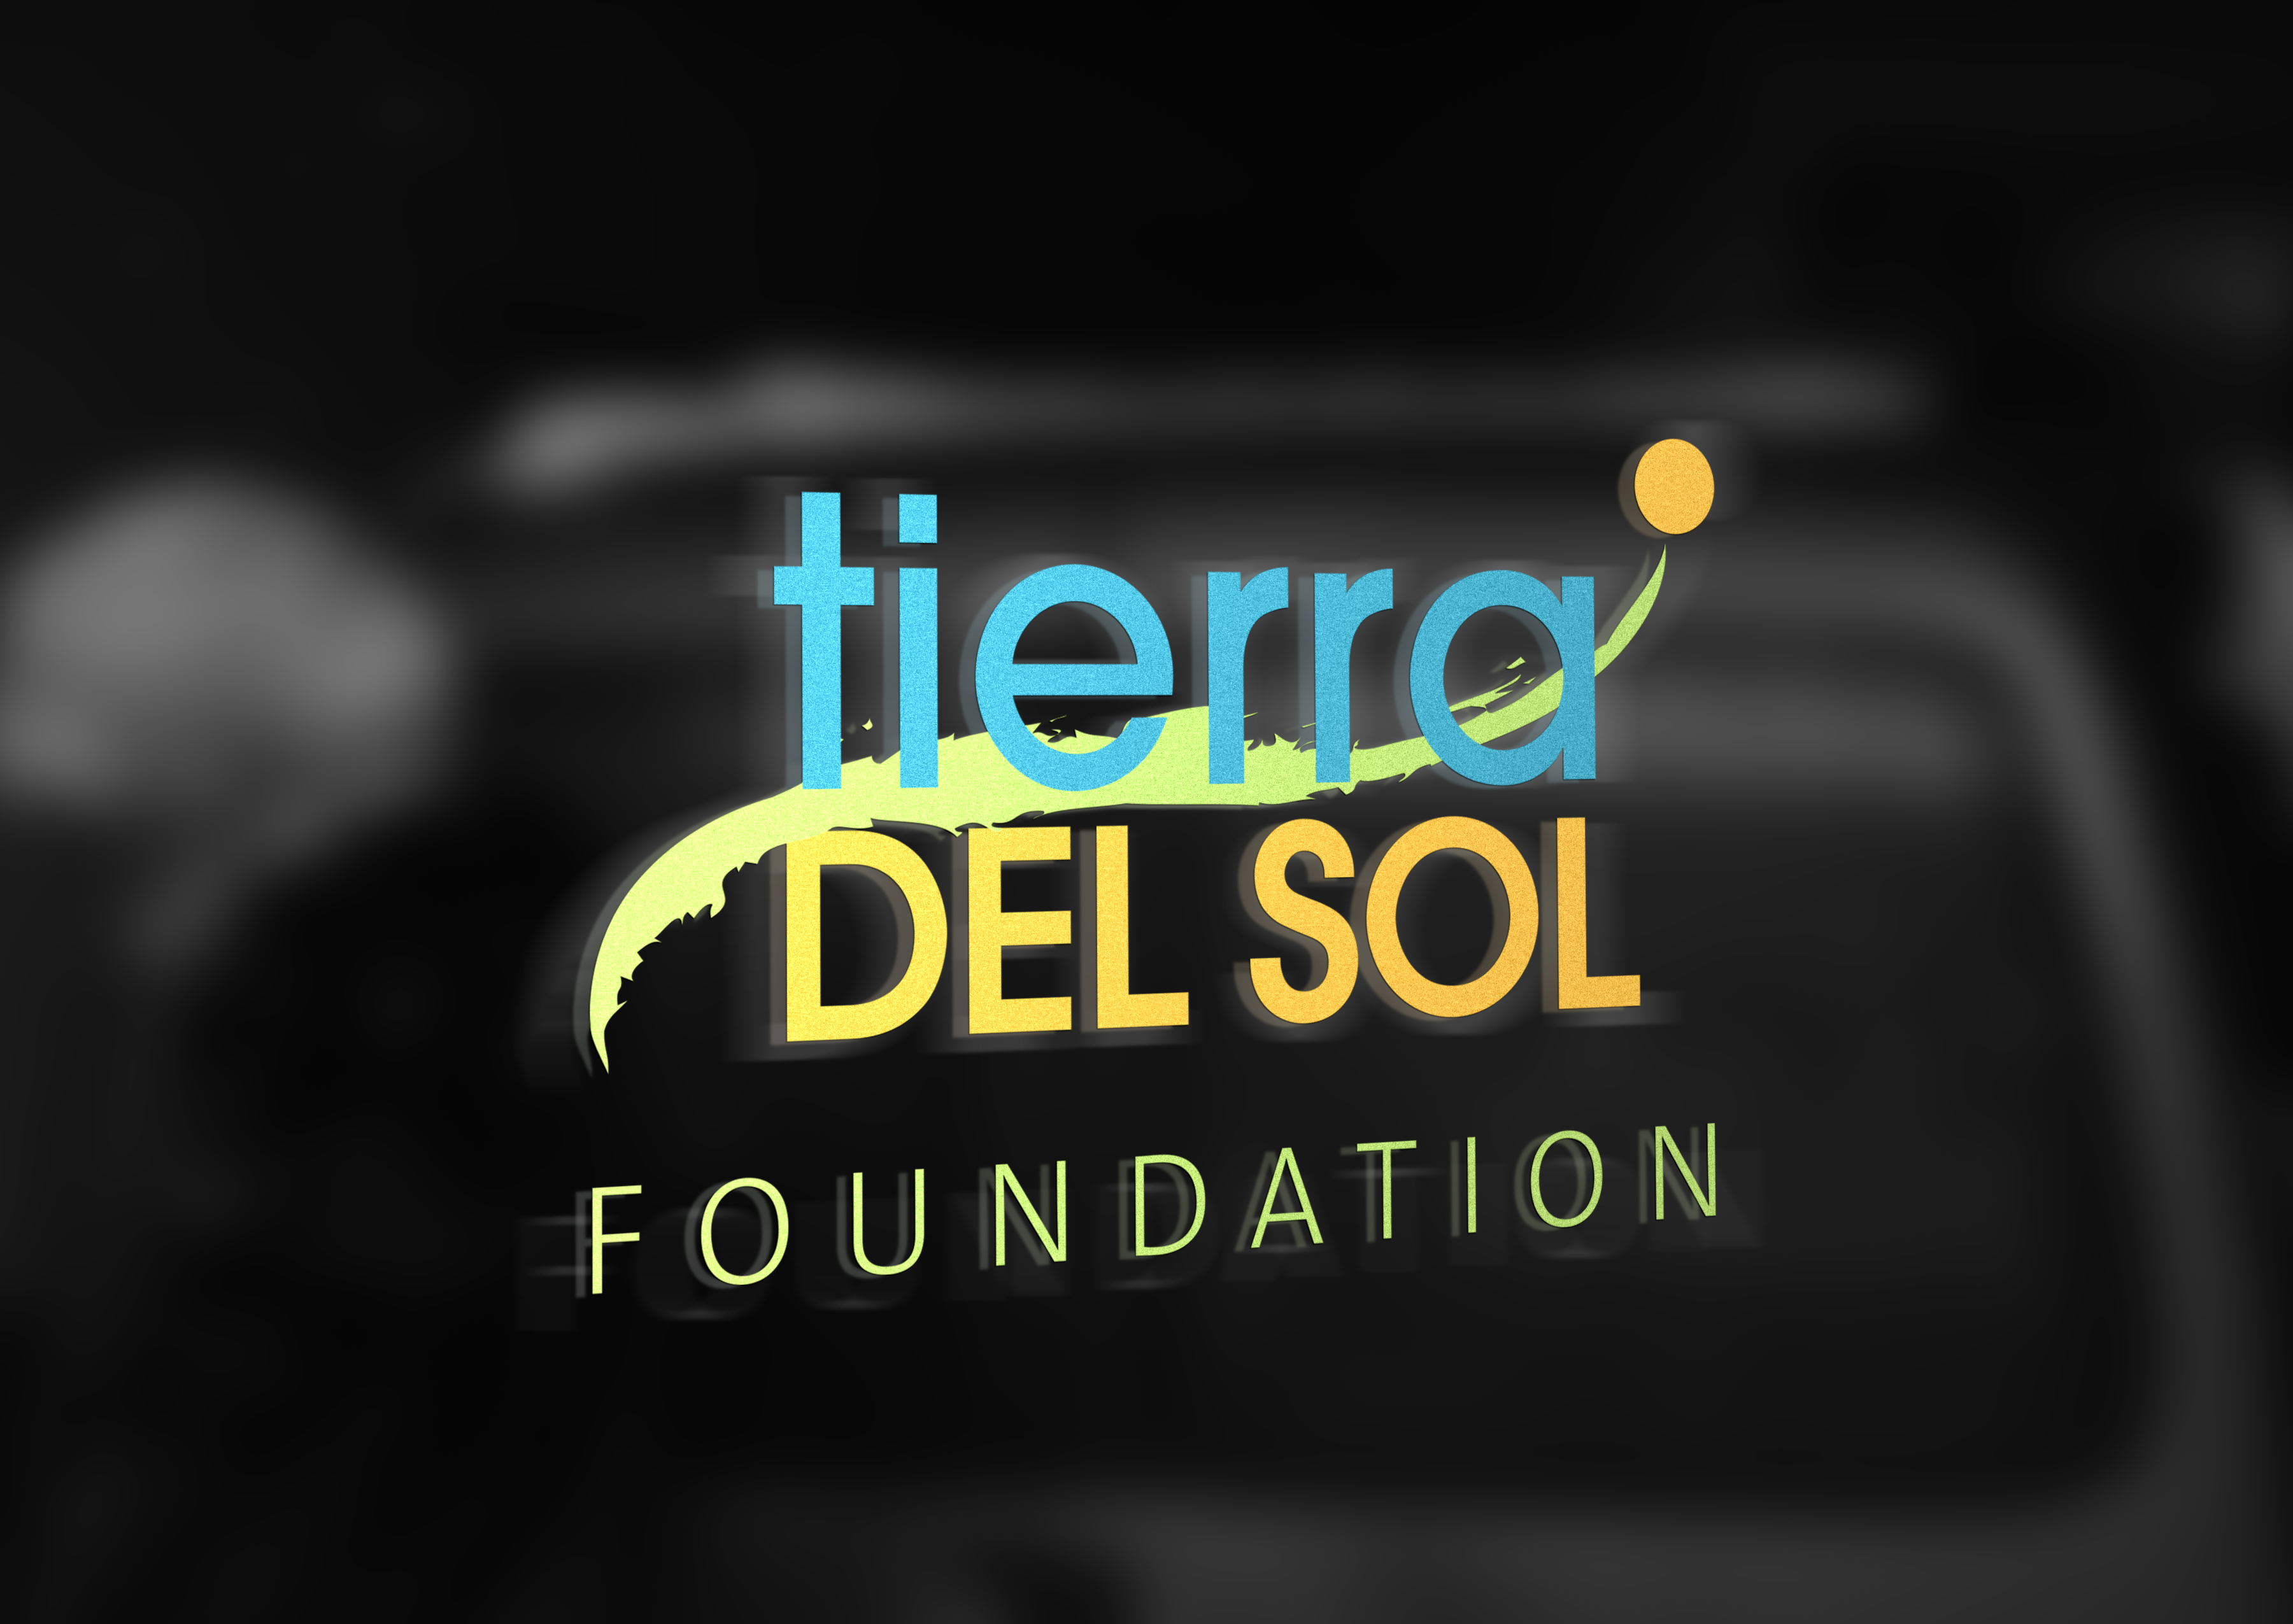 https://newmangrace.com/project/tierra-del-sol/